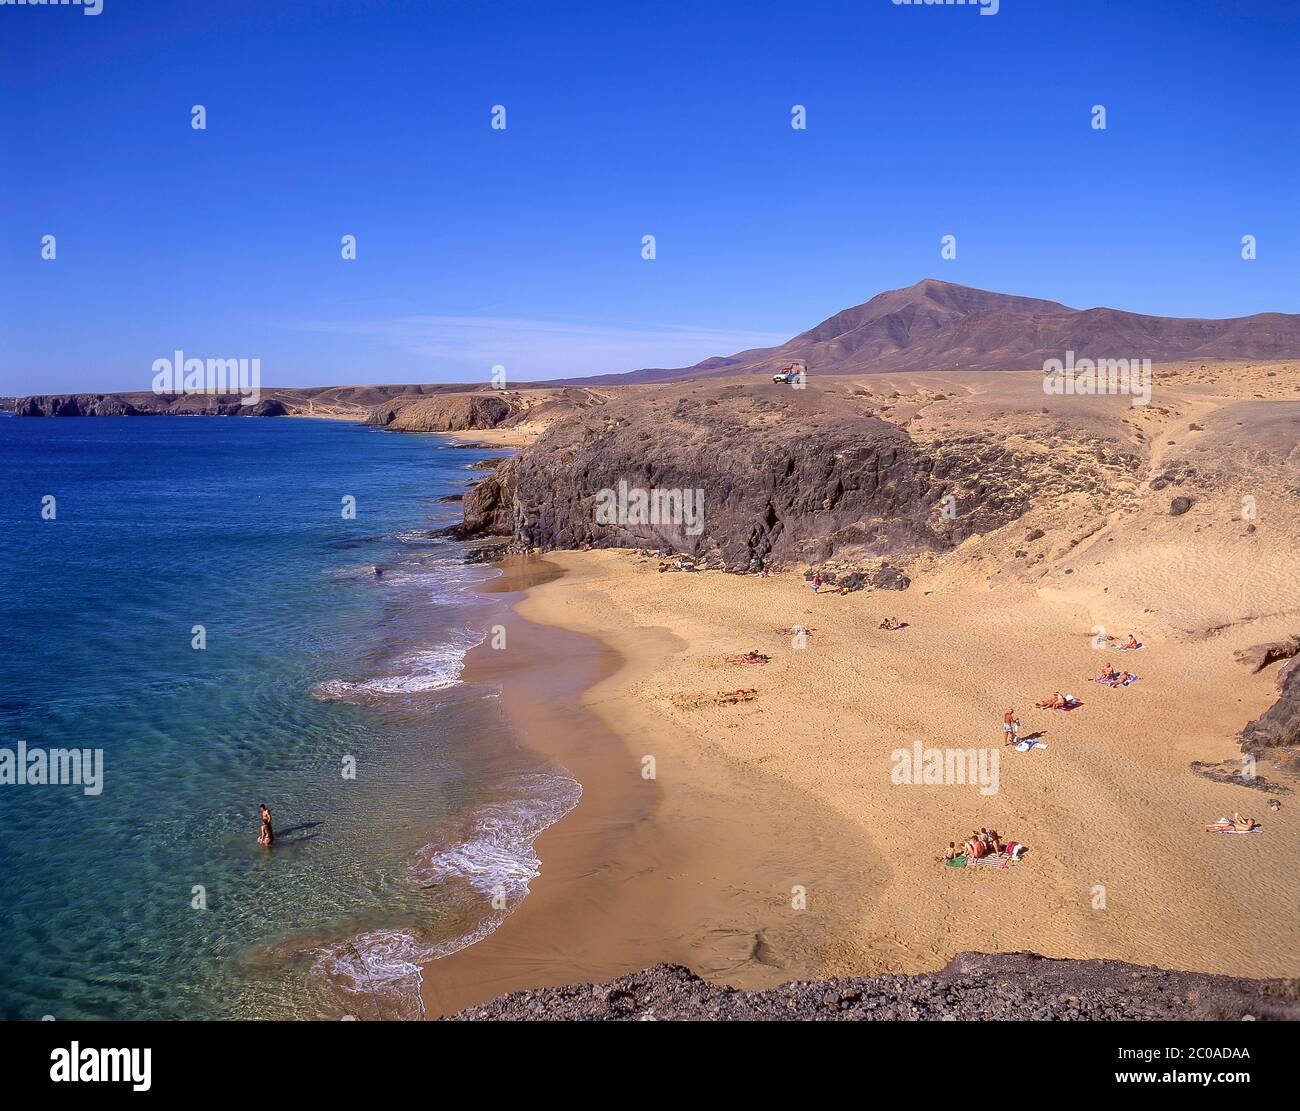 Playa de La Cera, Papagayo, Lanzarote, Canary Islands, Kingdom of Spain Stock Photo